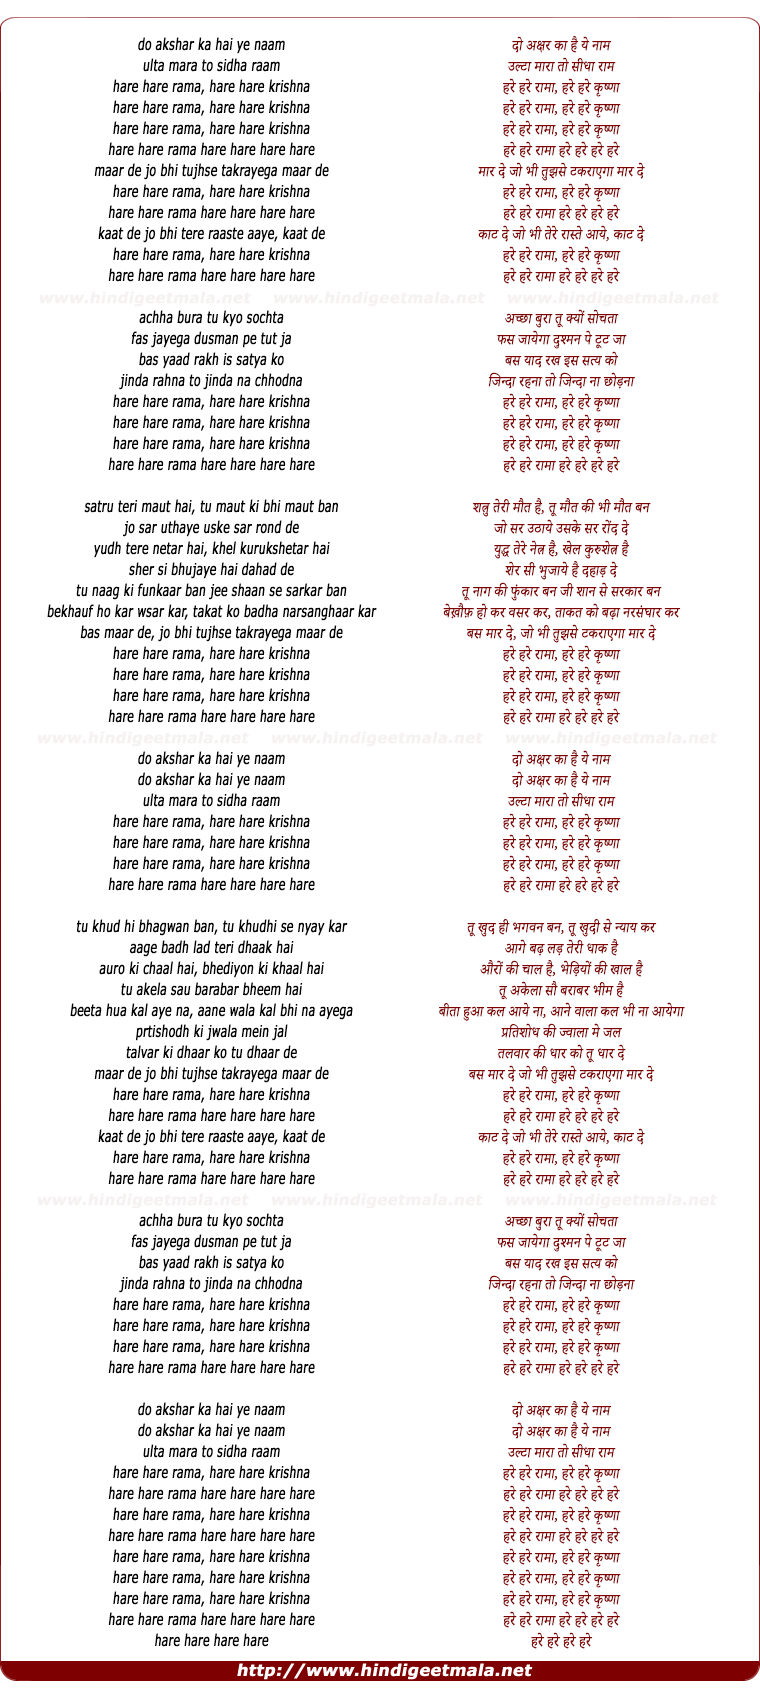 lyrics of song Maar De Jo Bhi Tujhse Takrayega